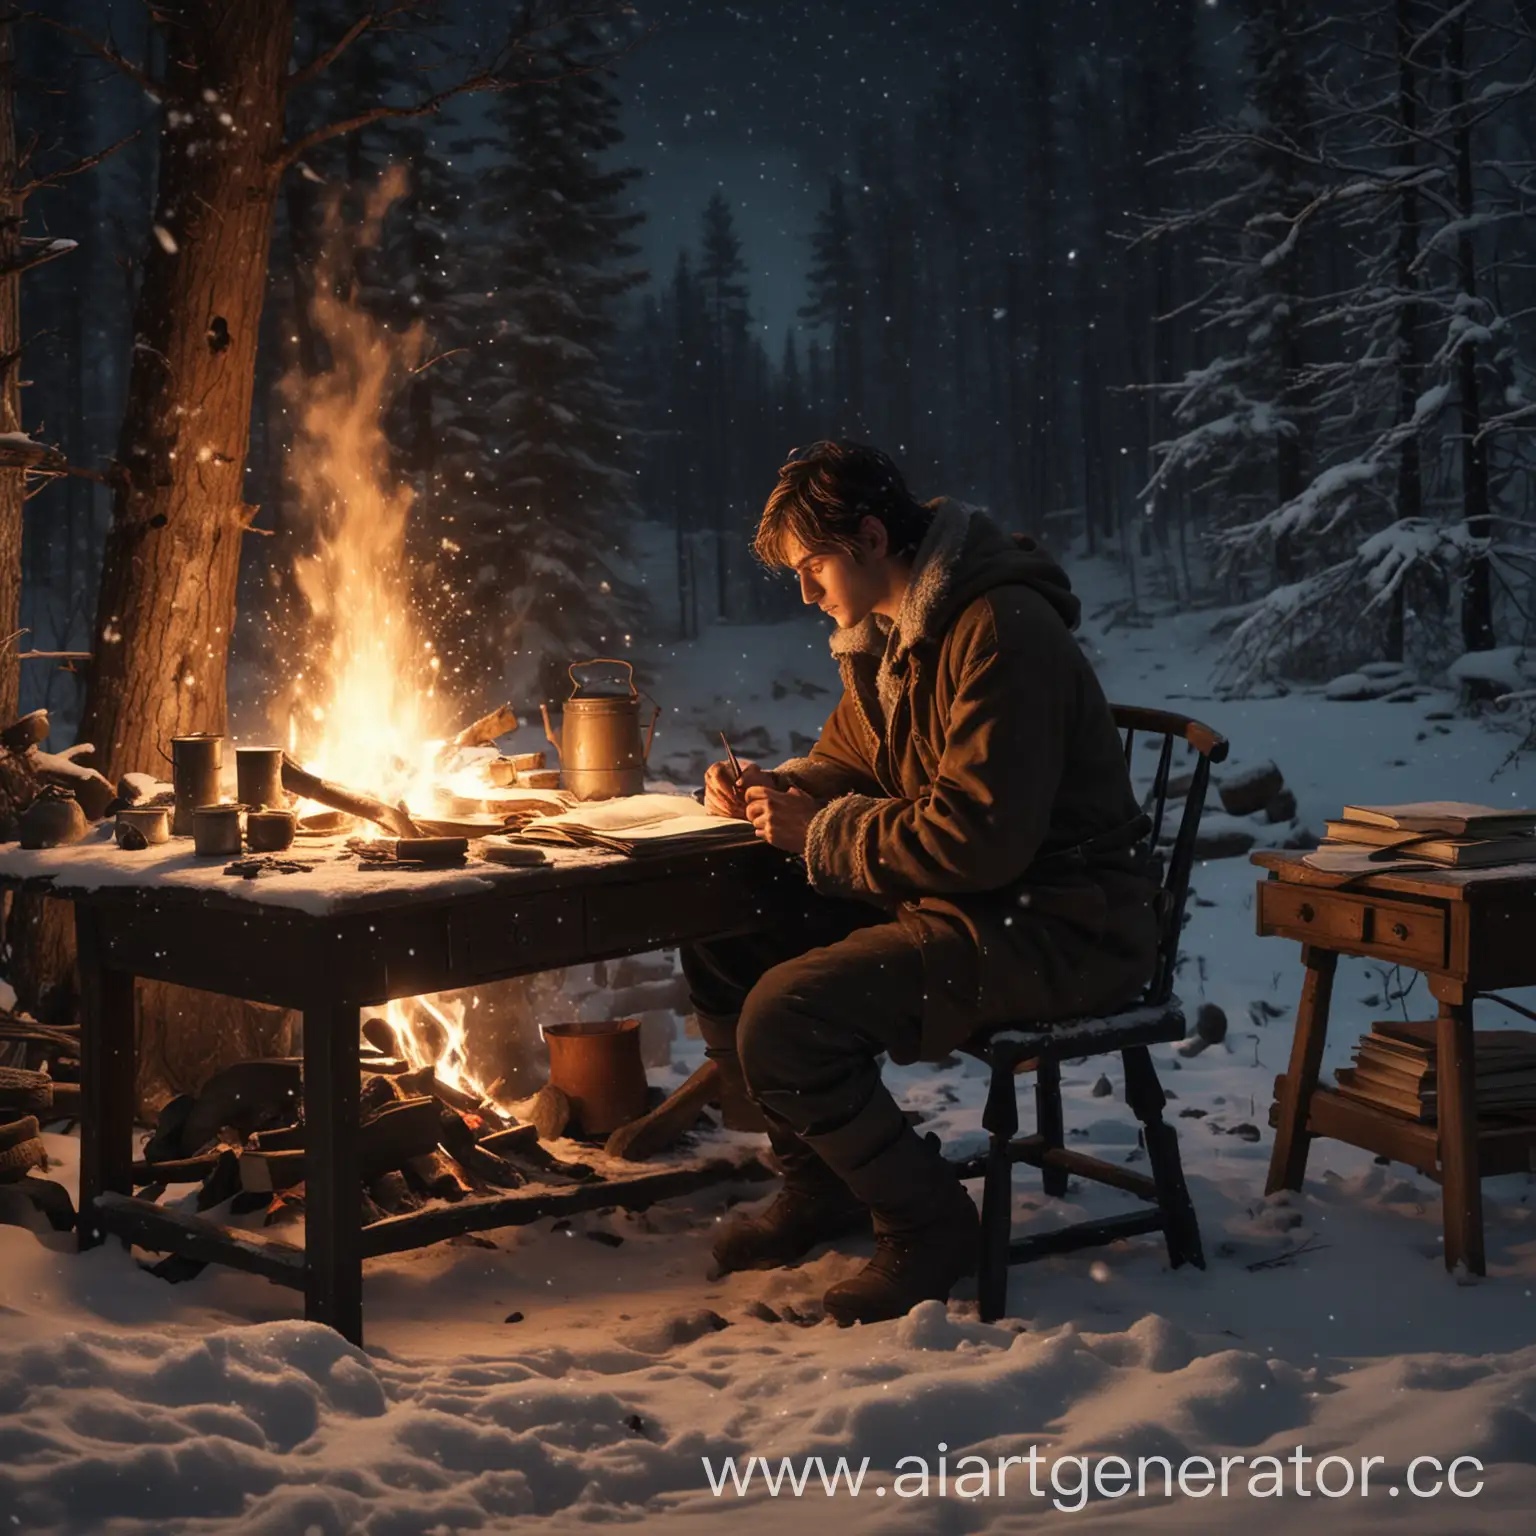 Писатель мужчина сидит ночью у костра за письменным столом. Вокруг его окружает тайга, а с неба падает снег